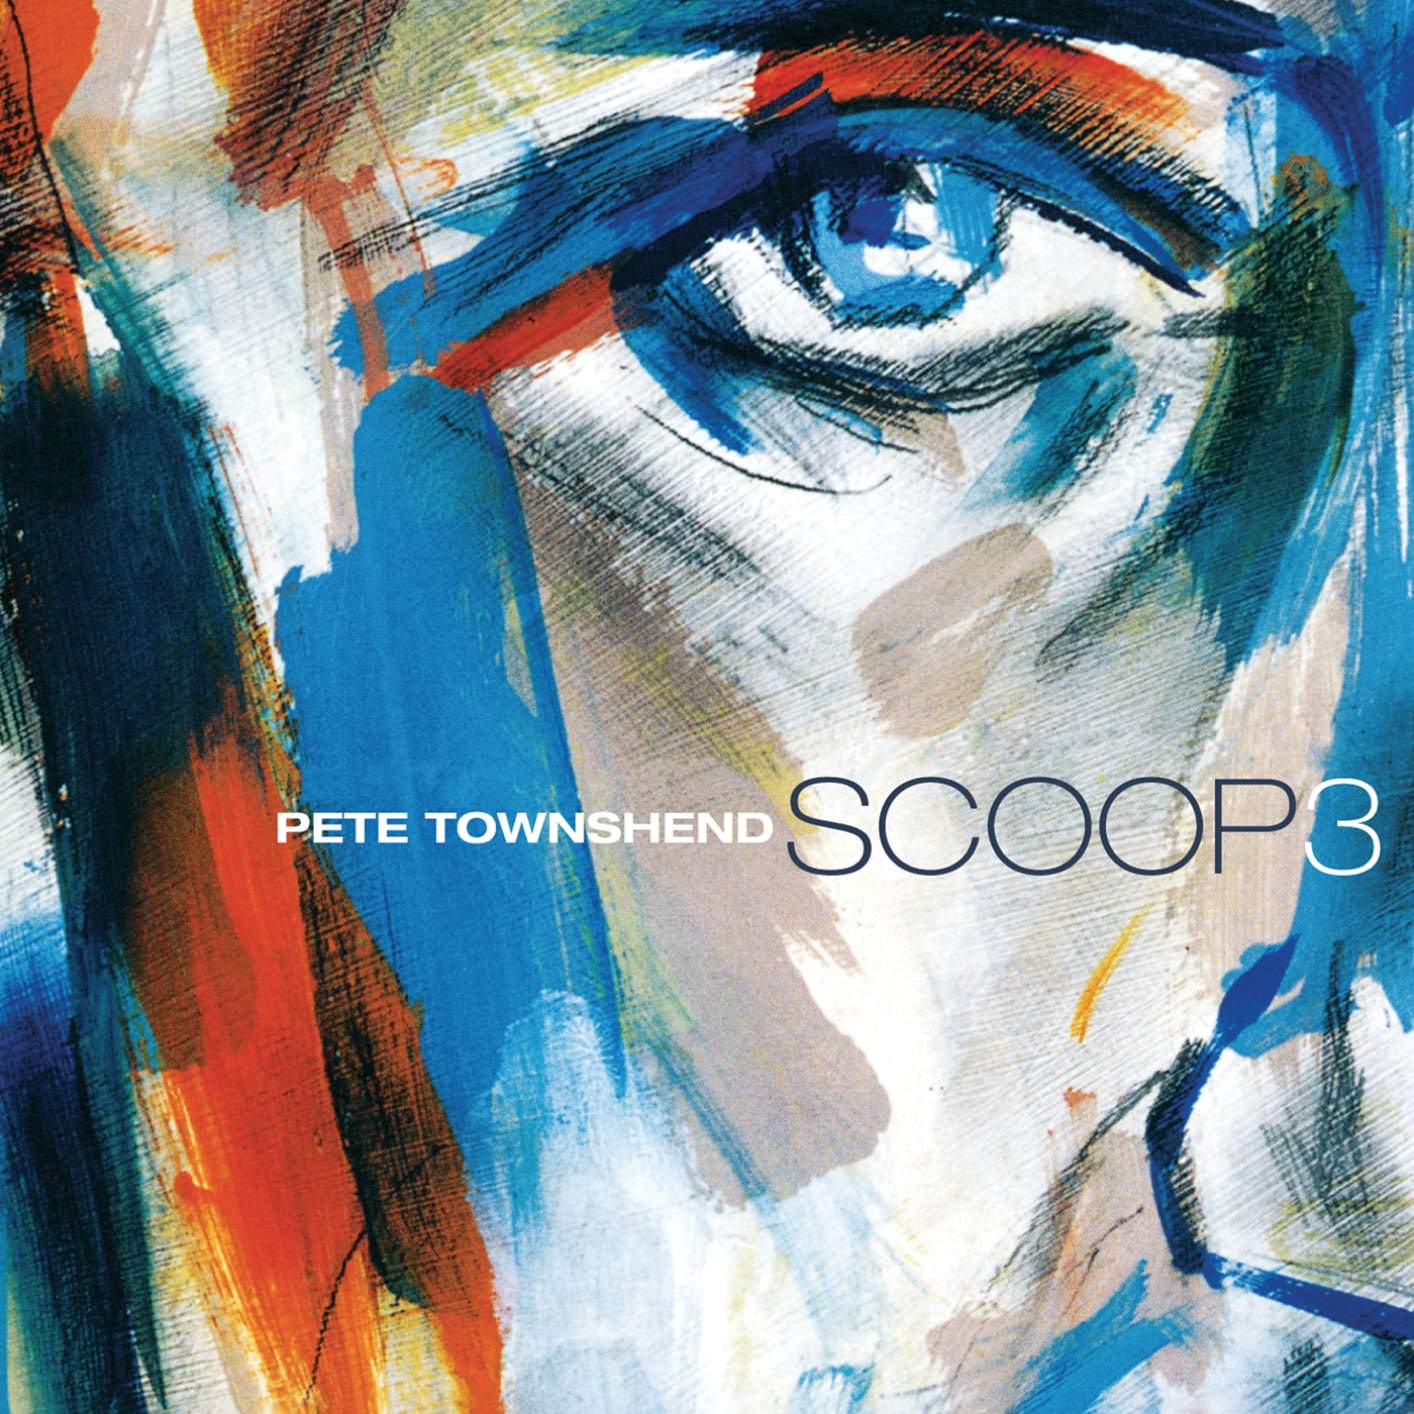 Pete Townshend - Scoop 3 (2001/2017) [Qobuz FLAC 24bit/96kHz]